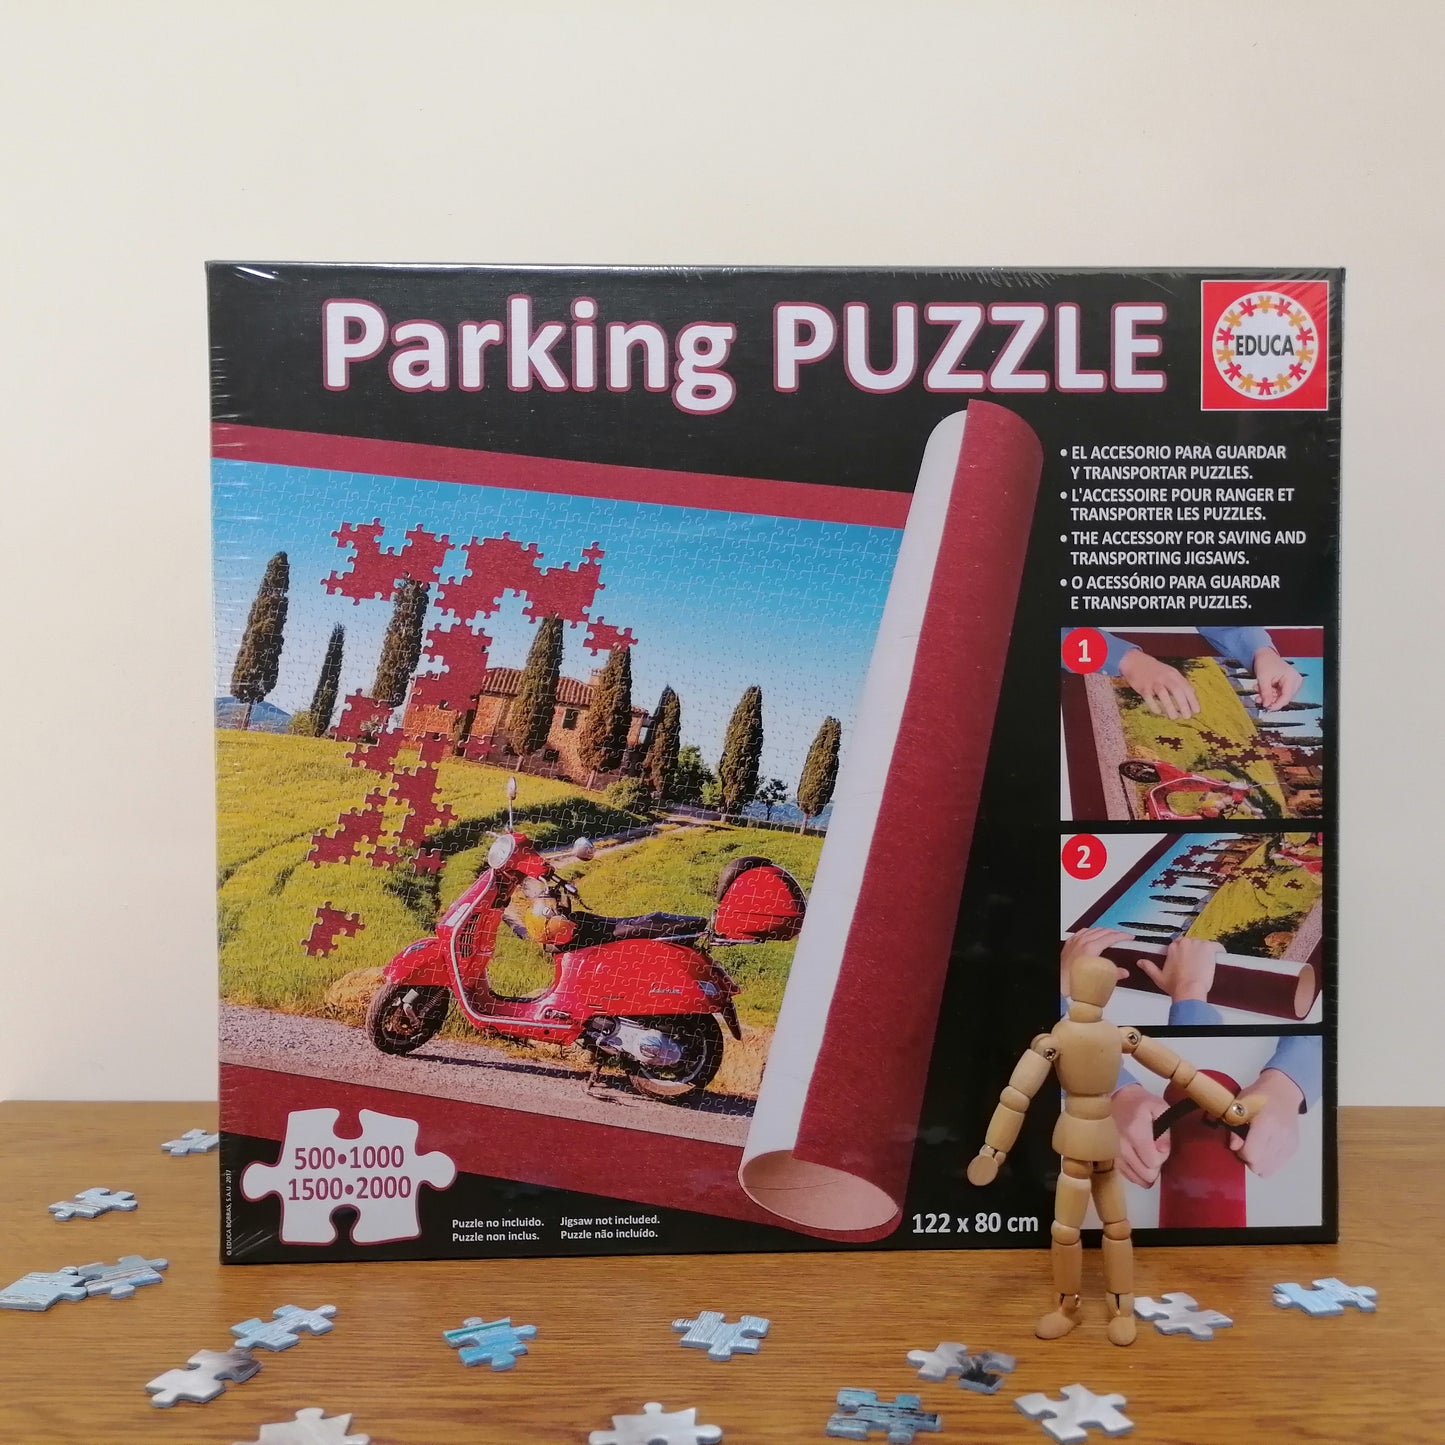 Parking puzzle